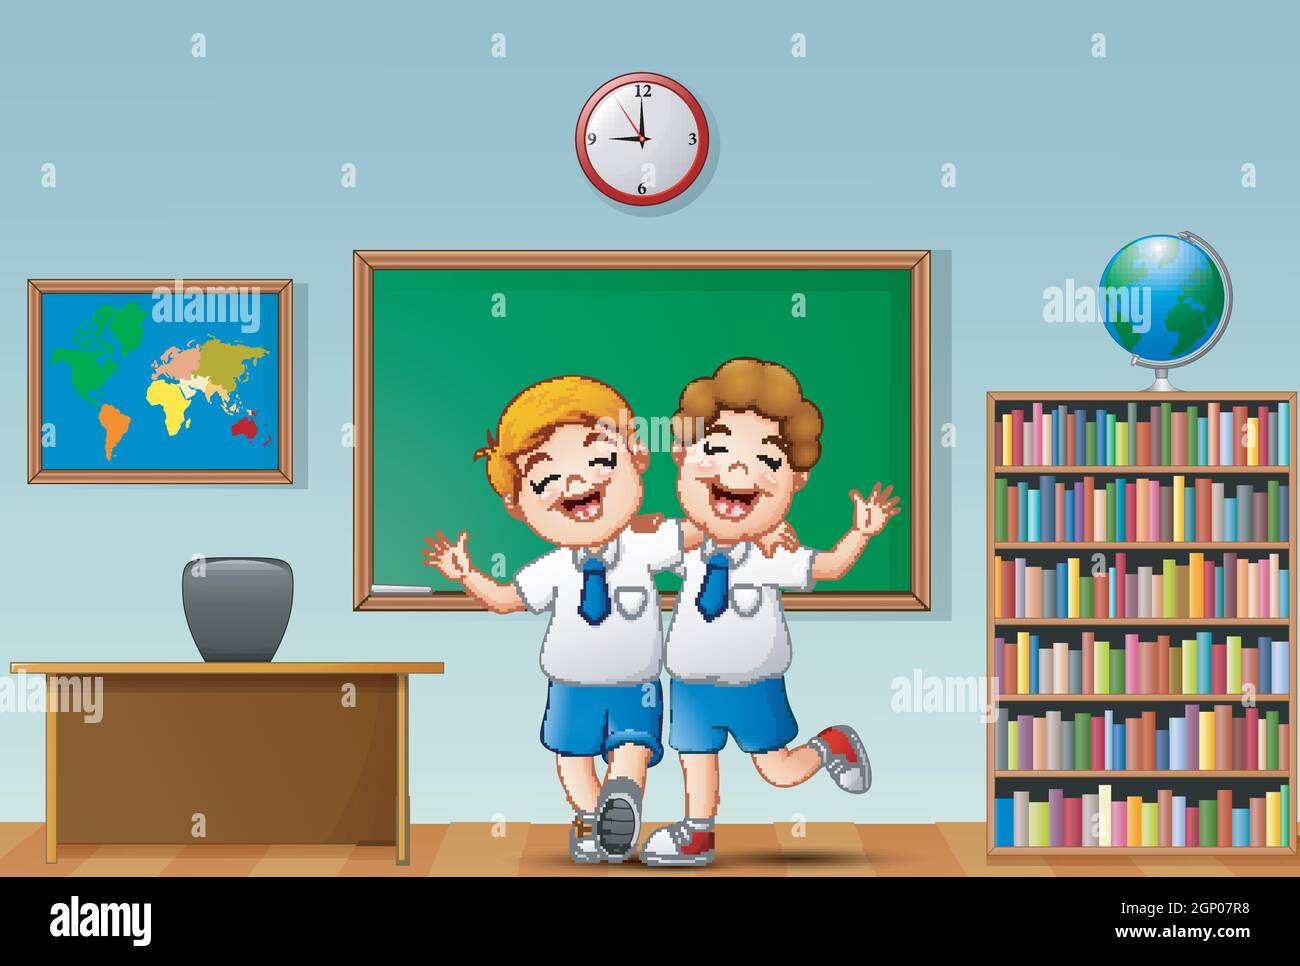 les enfants agitant la main devant la salle de classe avec embrace les uns les autres Illustration de Vecteur